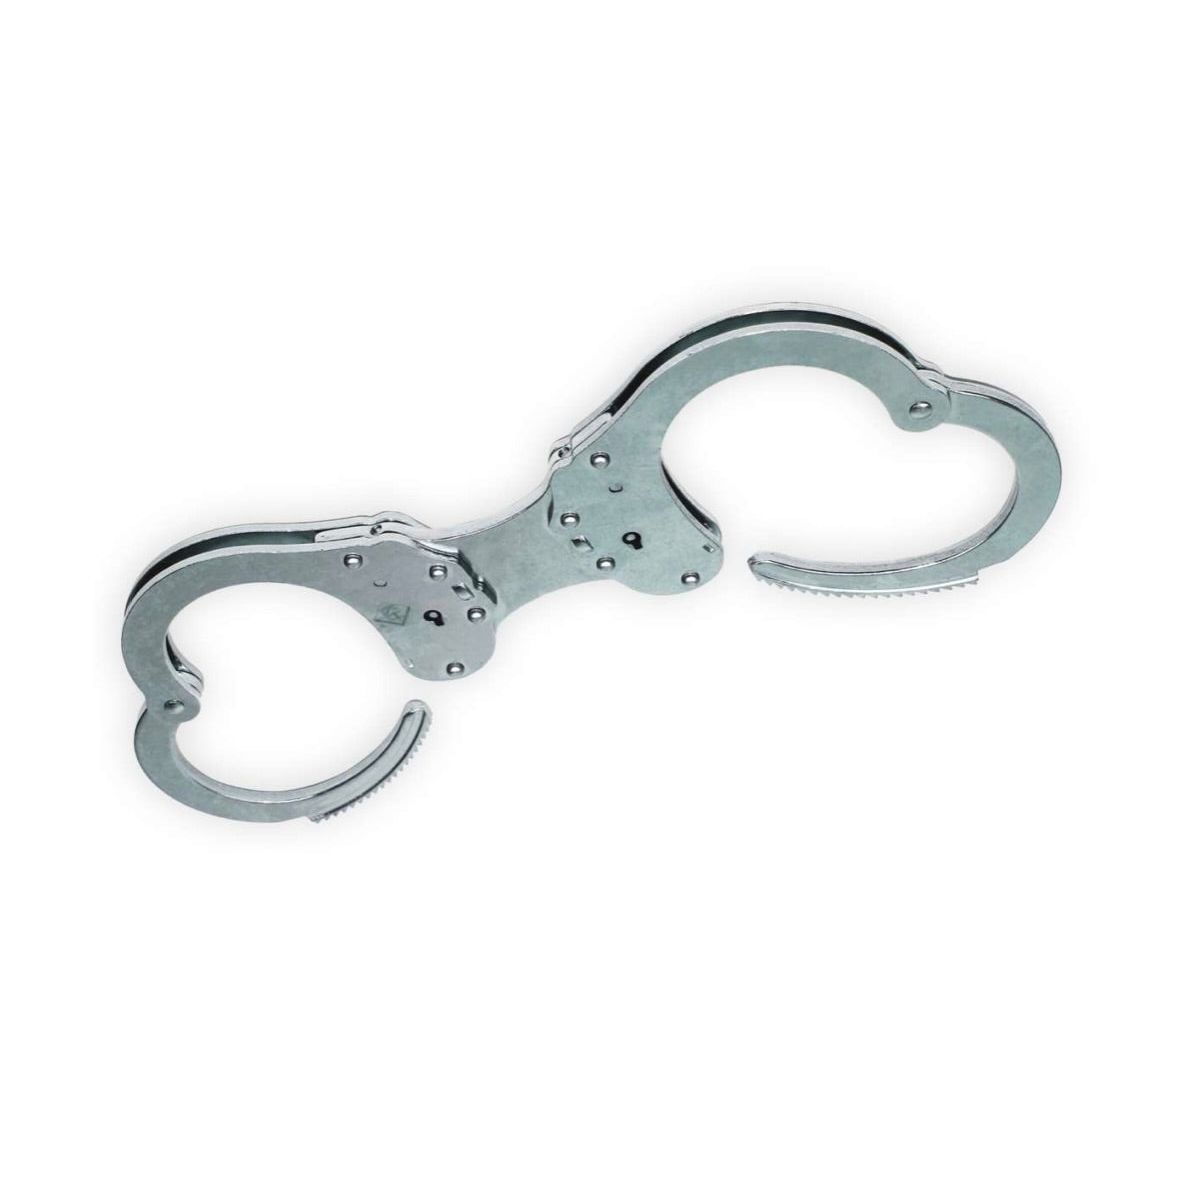 Rigid rigid handcuffs